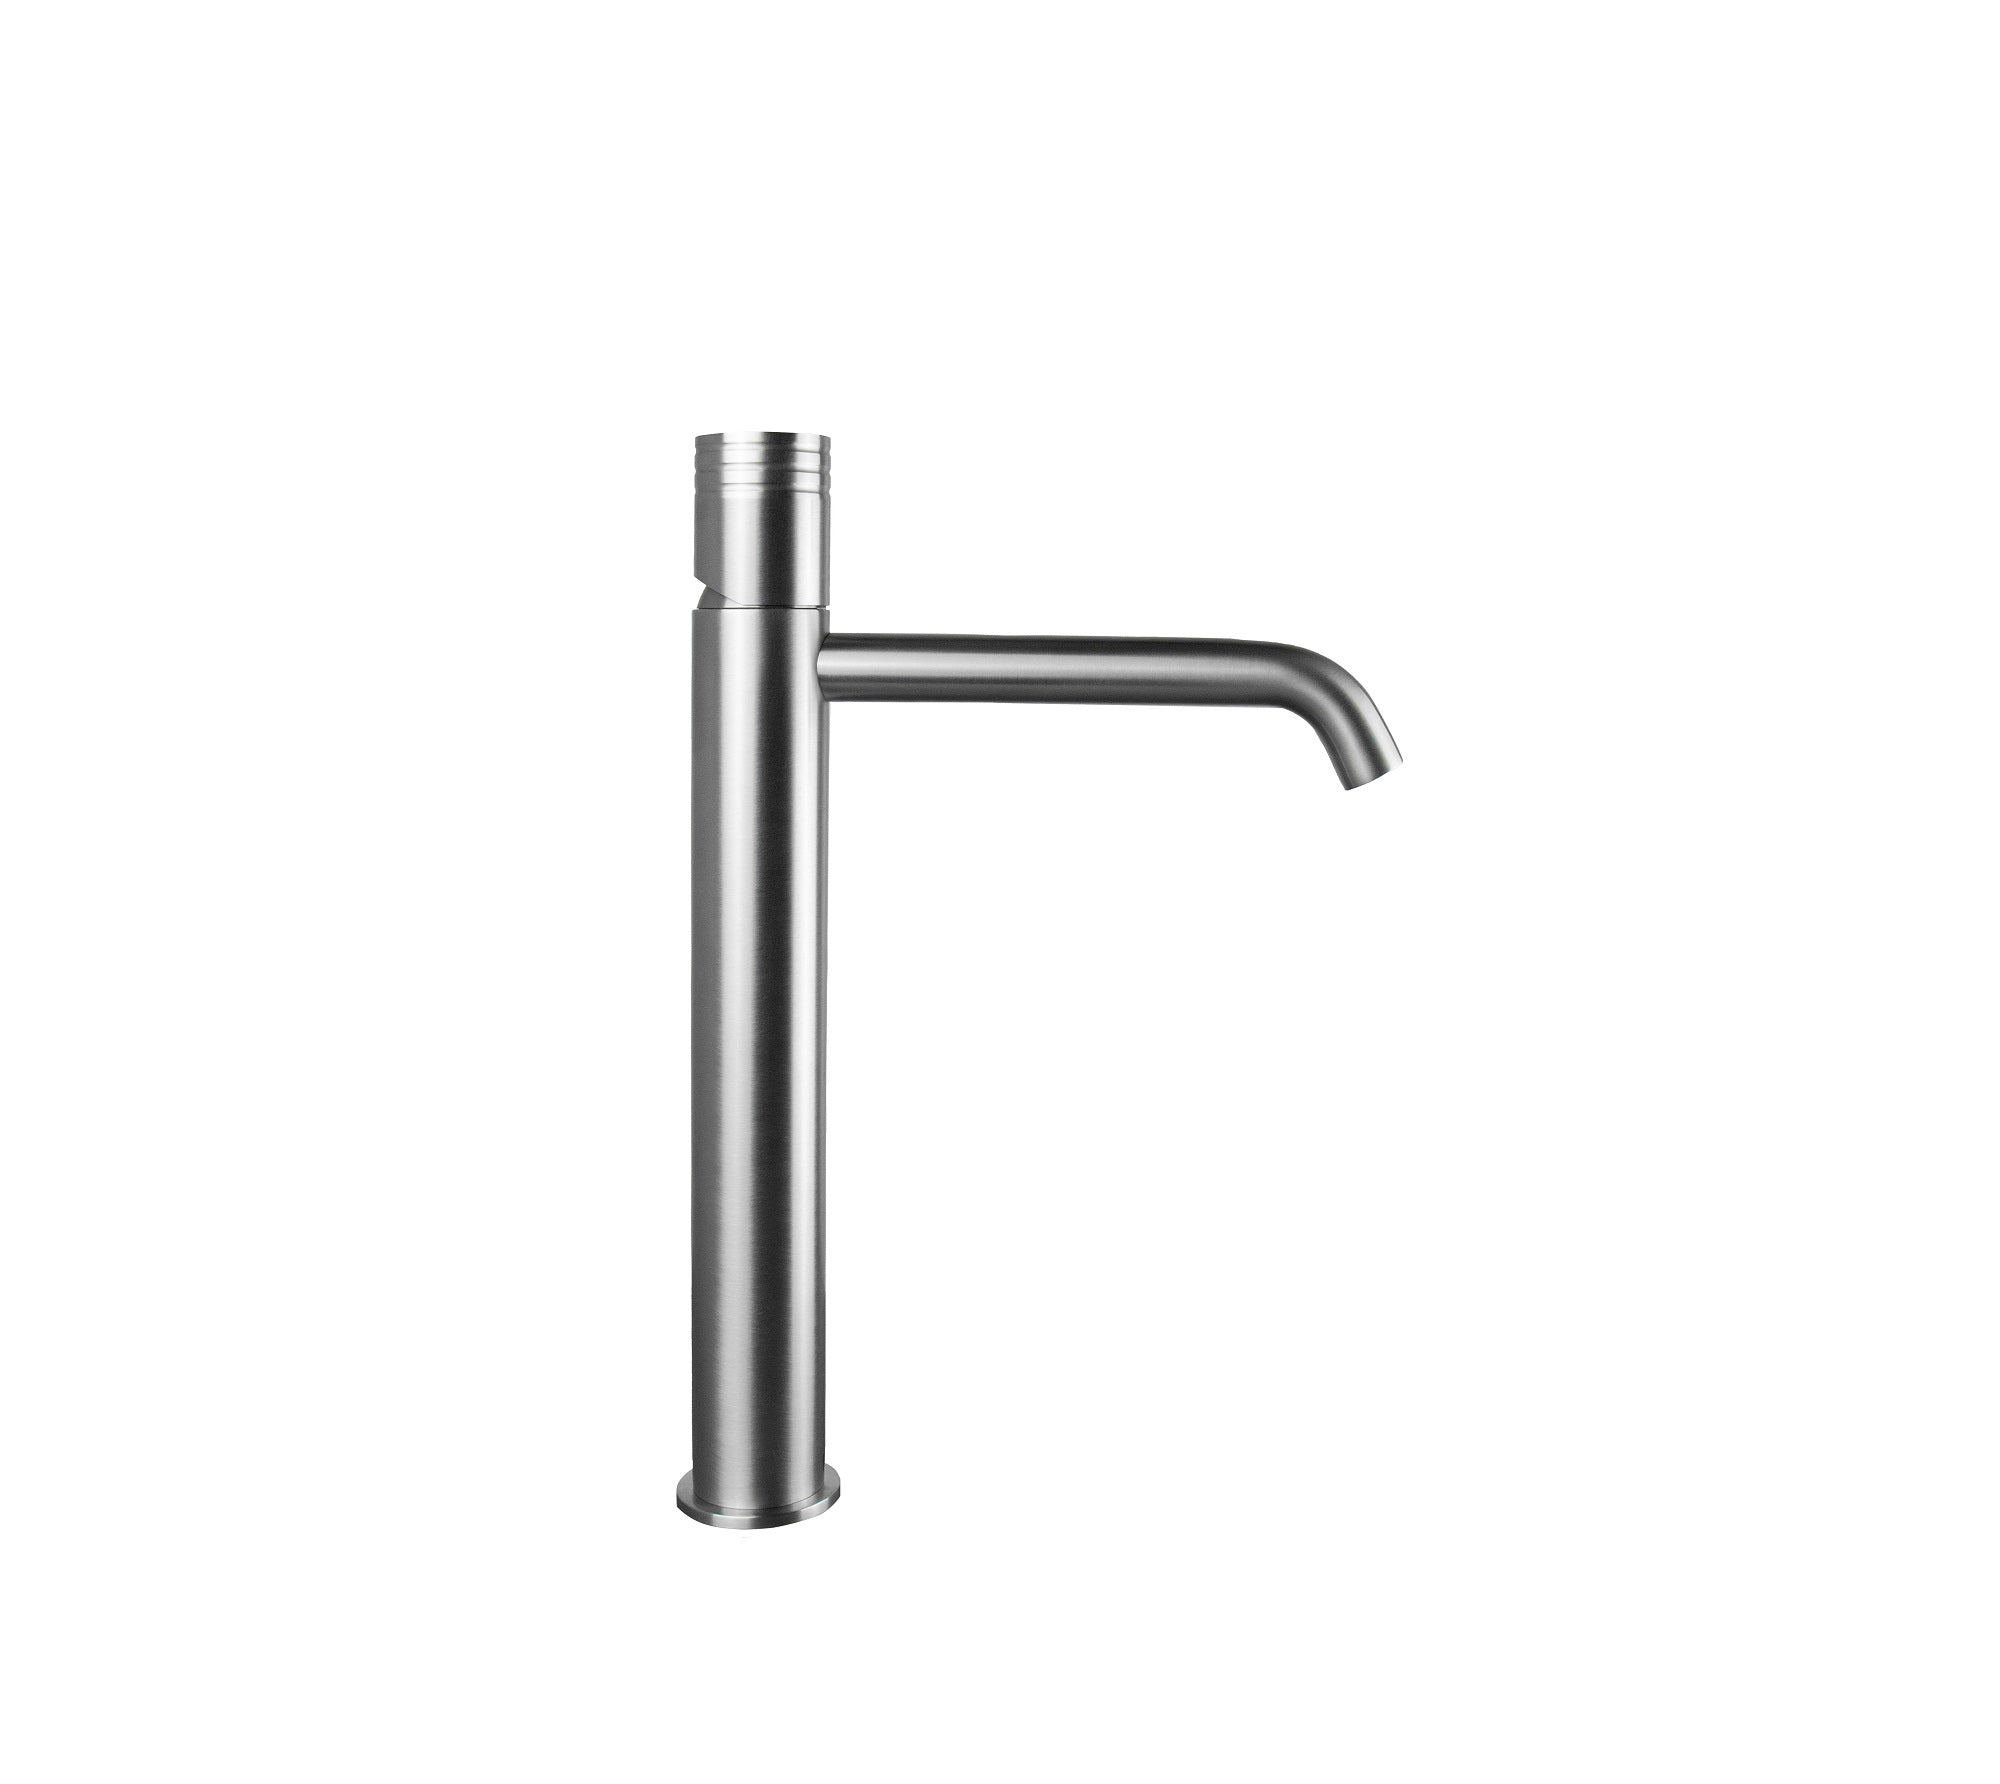 Tubico Loira rubinetto miscelatore alto per lavabo in acciaio inox 316L satinato Made in Italy T34120S